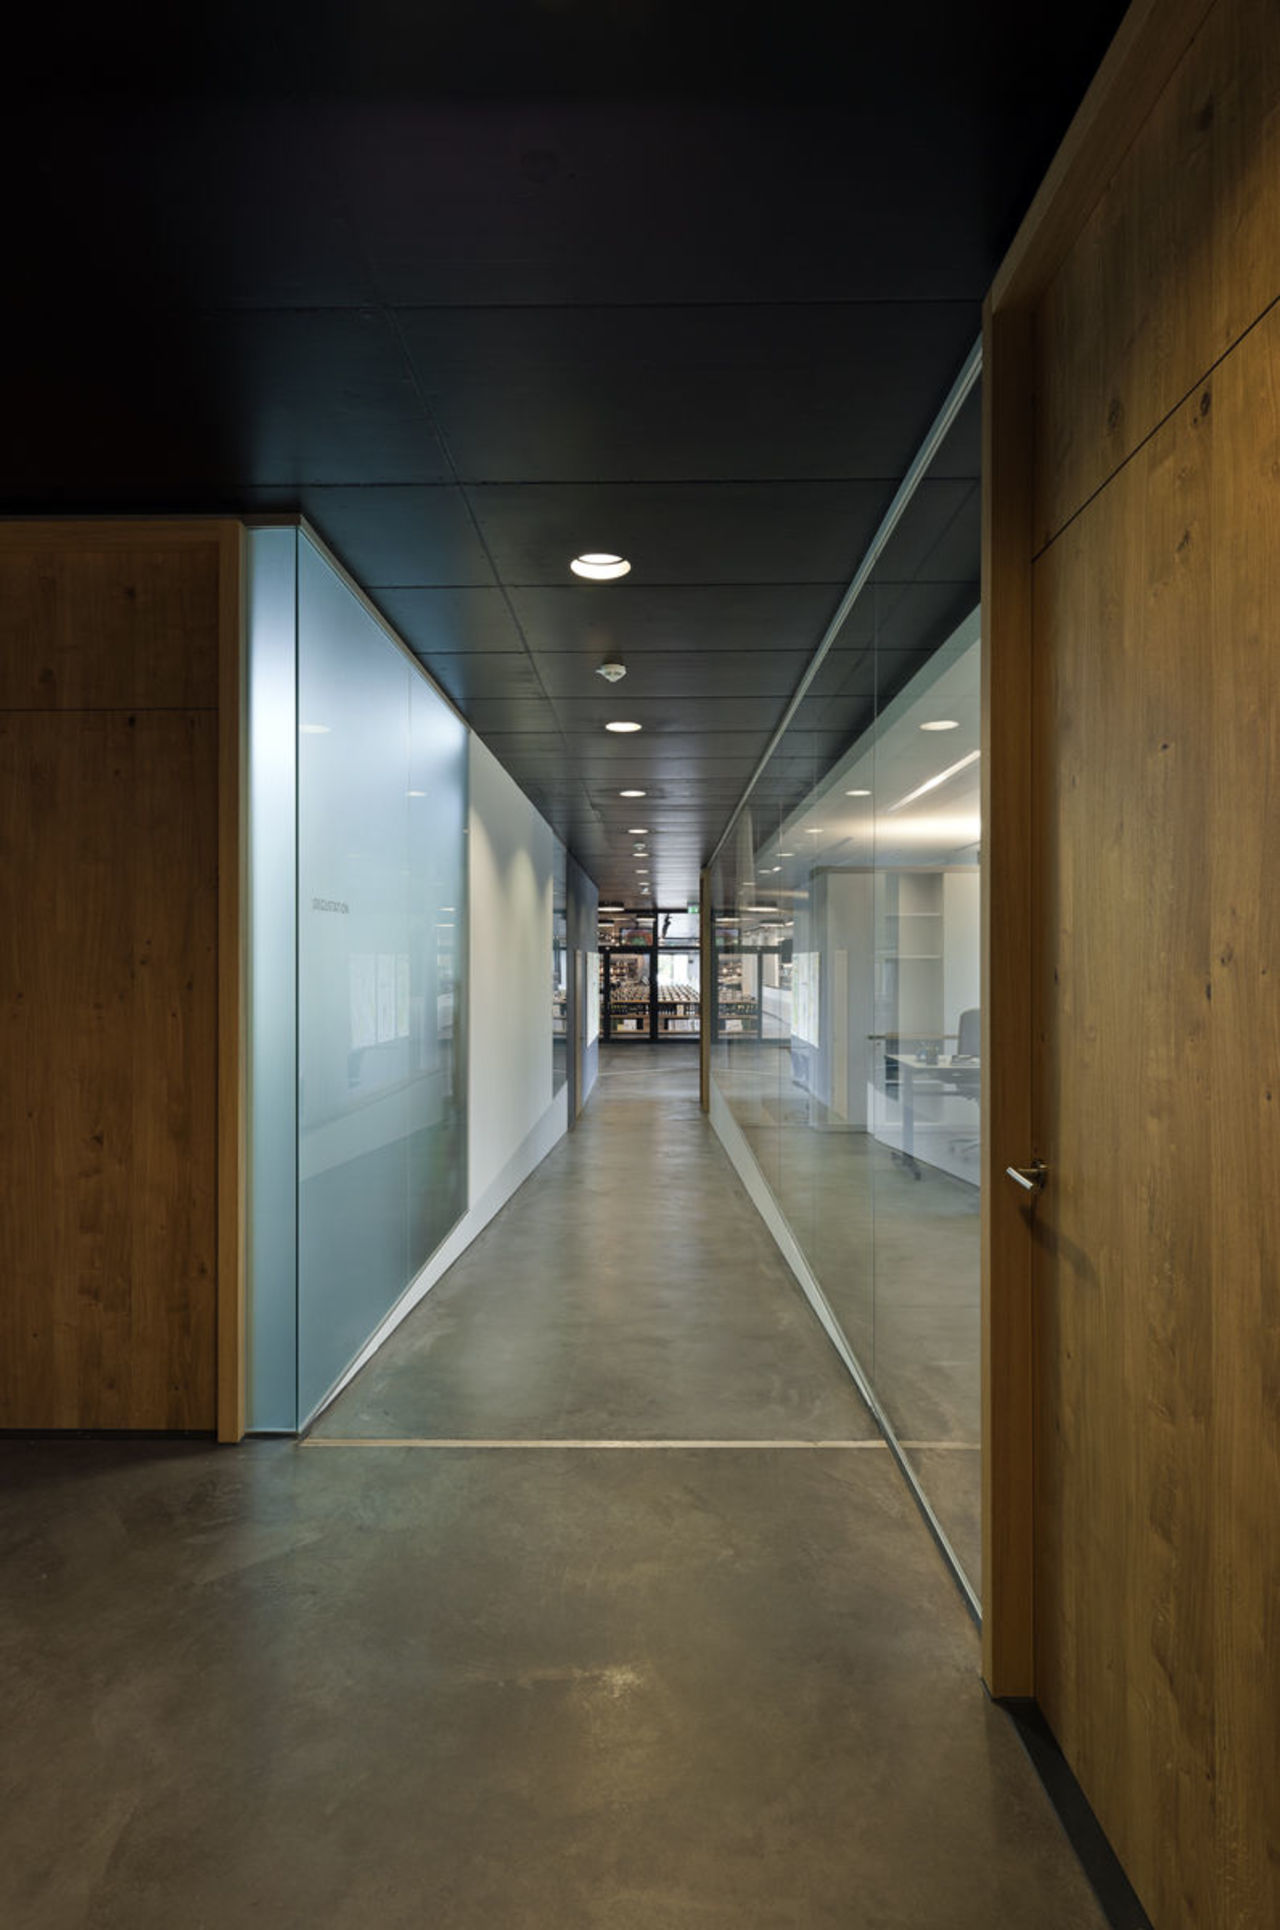 Foto: Blick in die Flure des Obergeschosses, die durch eine Glaswand die Büros abgrenzt. Die Büros werden durch Türen aus hellen Holz erschlossen.